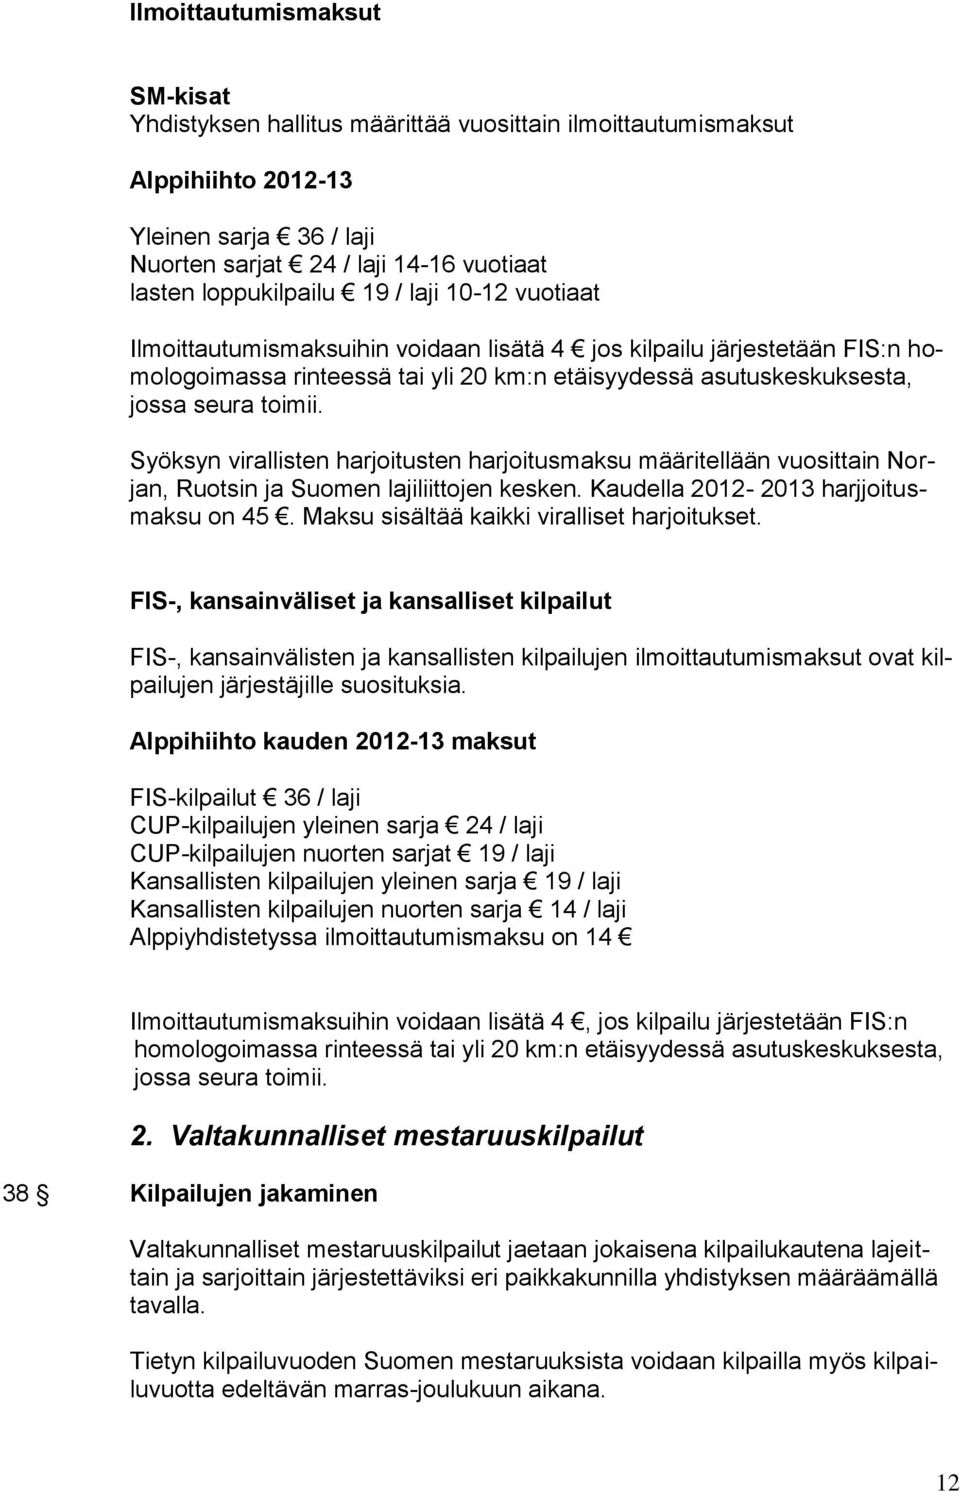 Syöksyn virallisten harjoitusten harjoitusmaksu määritellään vuosittain Norjan, Ruotsin ja Suomen lajiliittojen kesken. Kaudella 2012-2013 harjjoitusmaksu on 45.